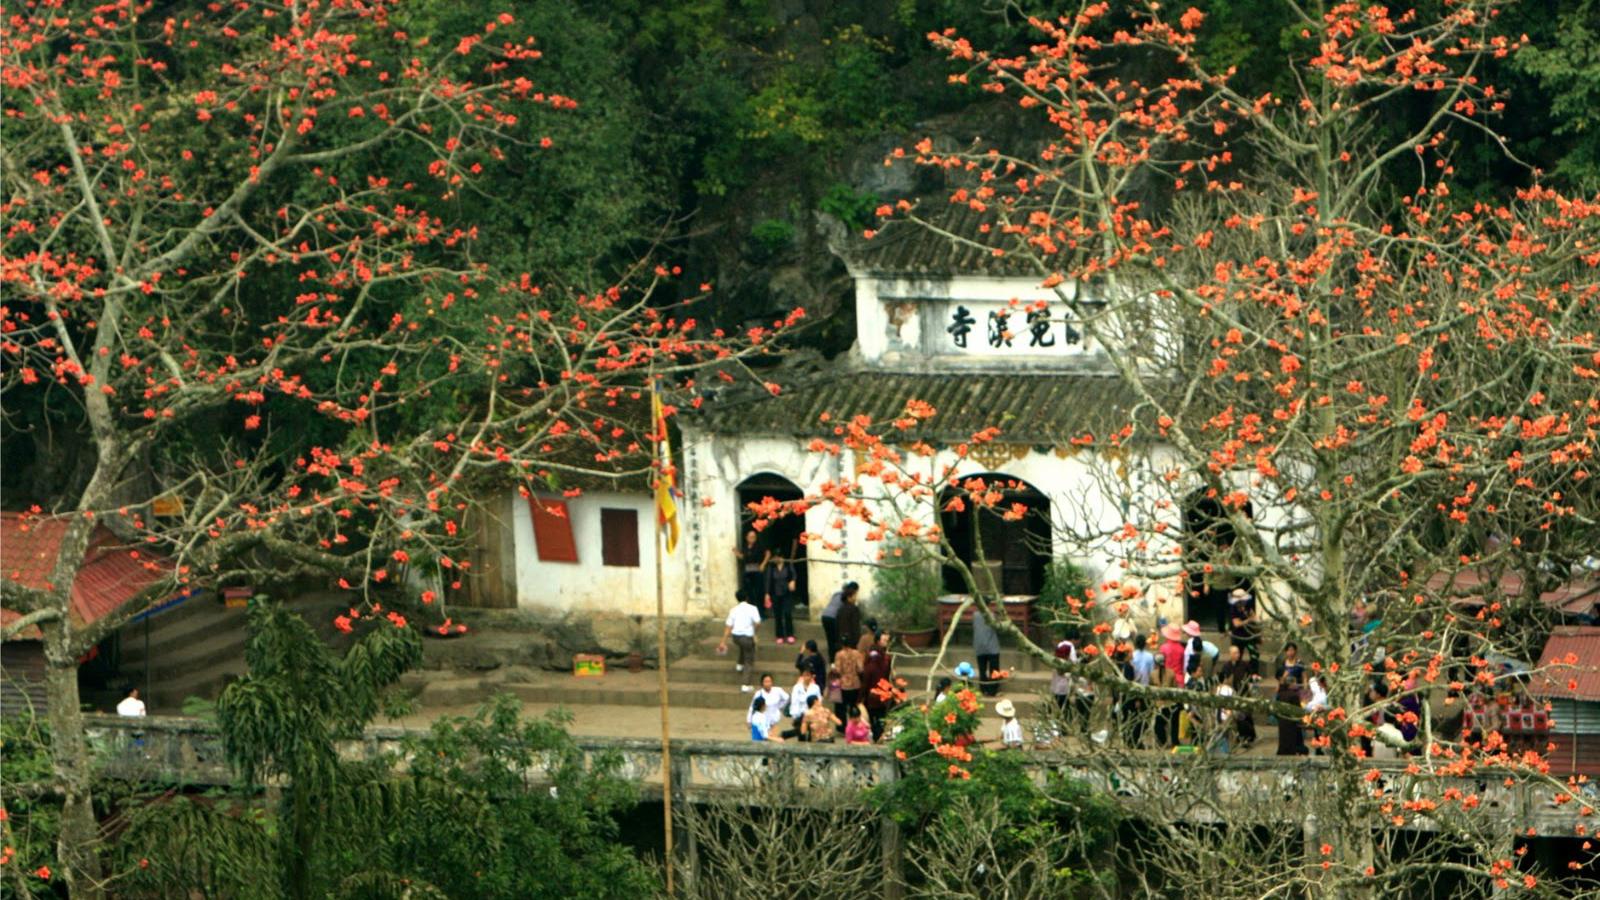 Du xuân đầu năm với 10 ngôi chùa nổi tiếng gần hà nội